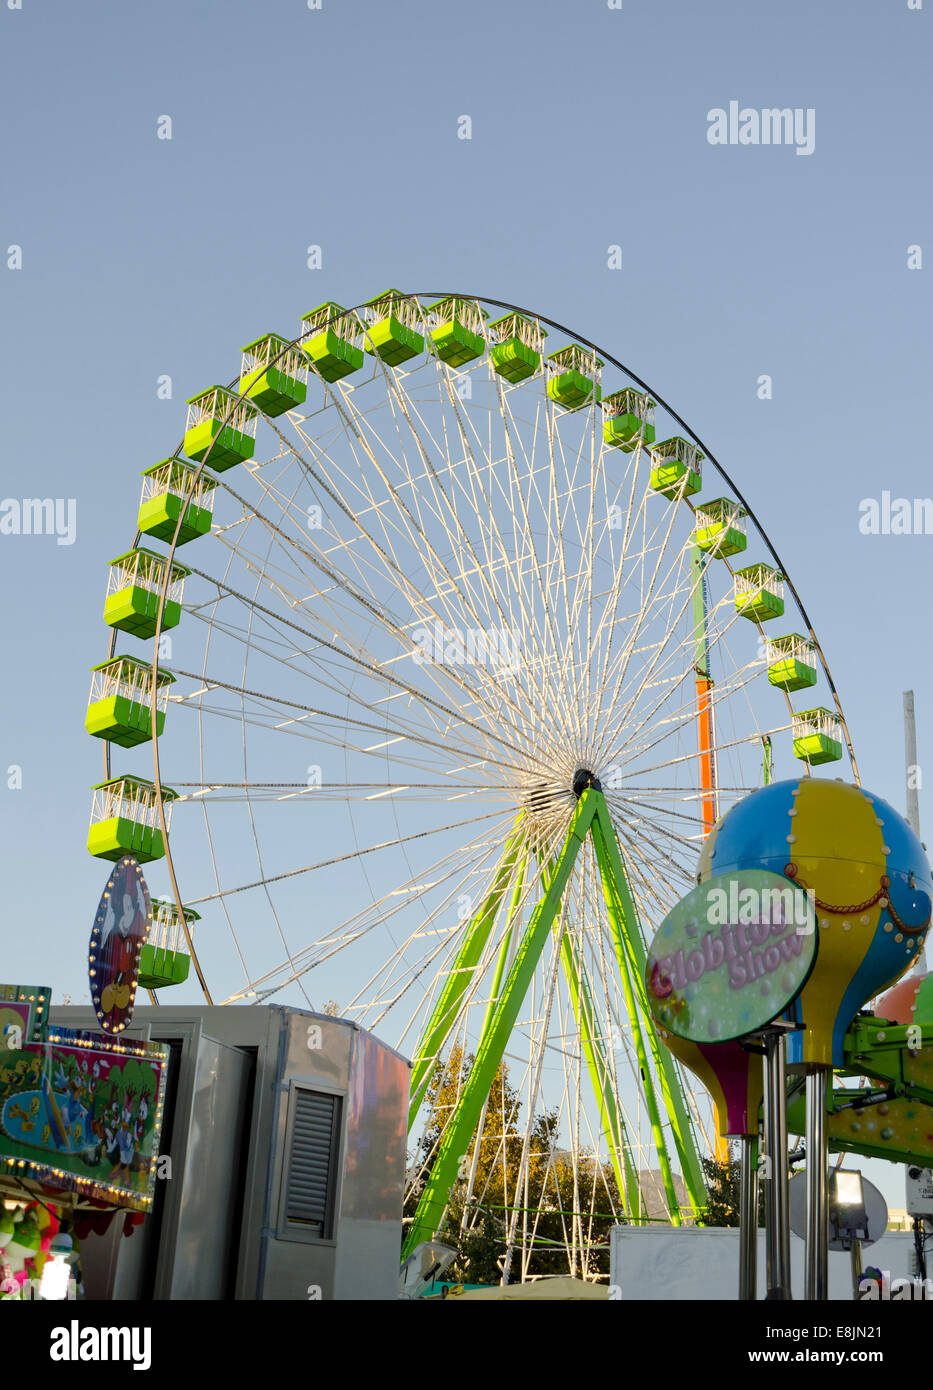 Old Ferris wheel on annual fair. funfair. Spain. Stock Photo